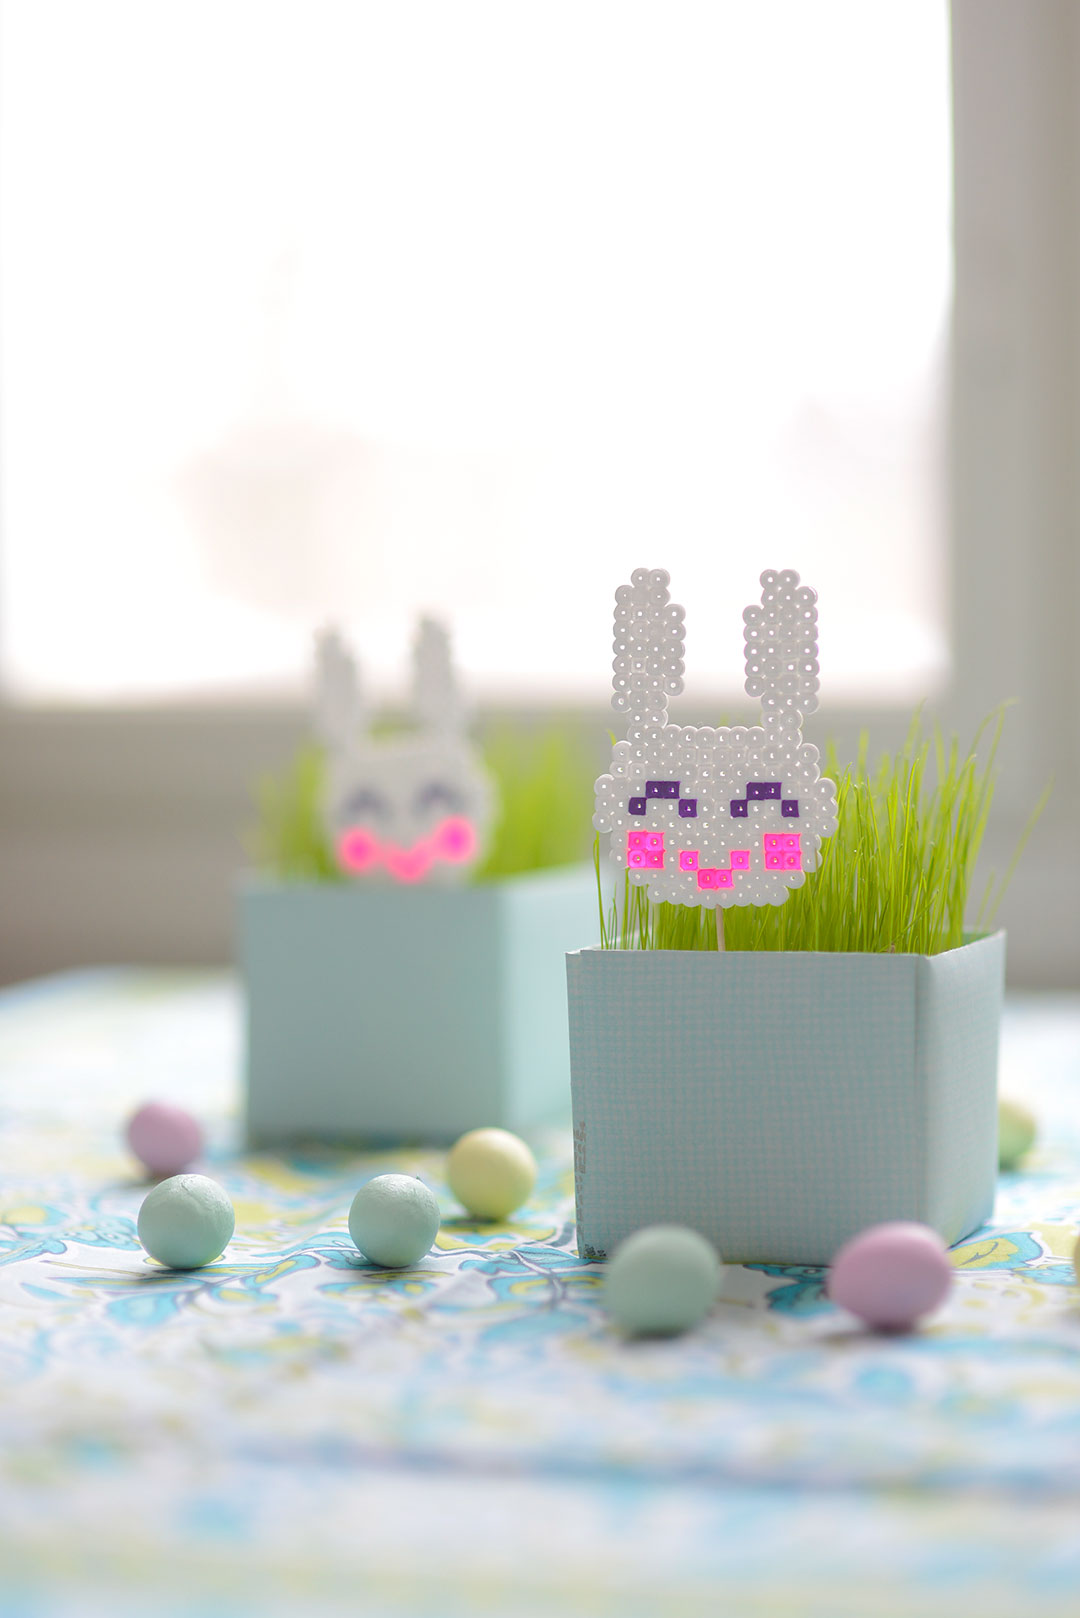 Cute Hama bead bunnies for Easter